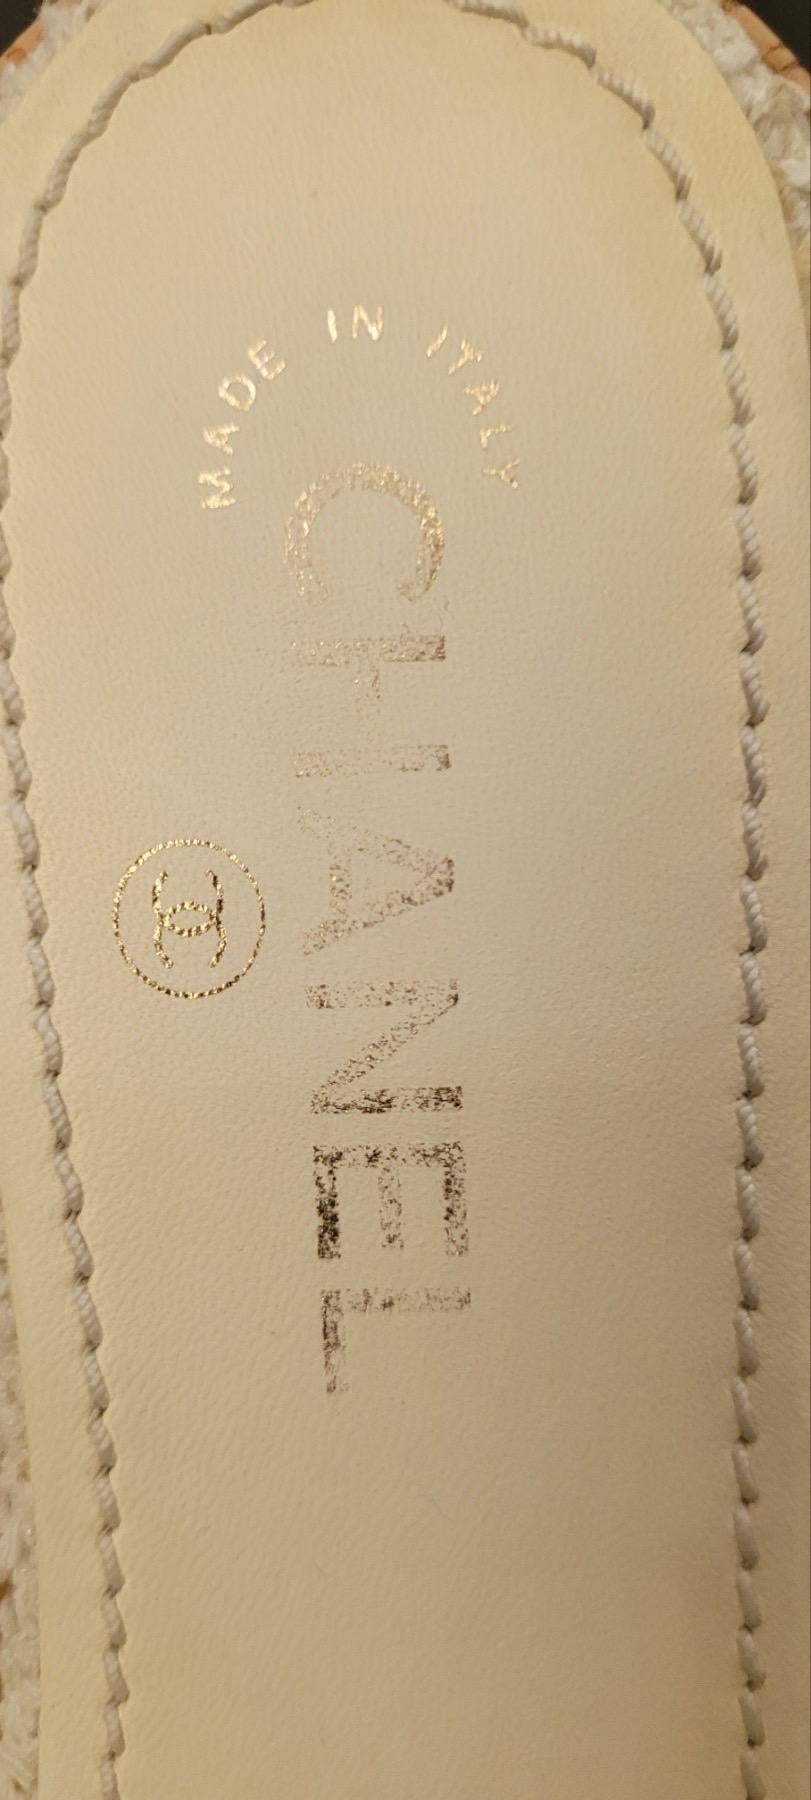     Chanel Sandalen aus Tweed
    Aus der Cruise 2021 Collection'S von Virginie Viard
    Weiß
    Colorblock-Muster
    Maschendraht-Akzente


Sehr guter Zustand.
Gebrauchsspuren auf den Bildern zu sehen.
Sz. 39
Keine Box. Kein Staubbeutel